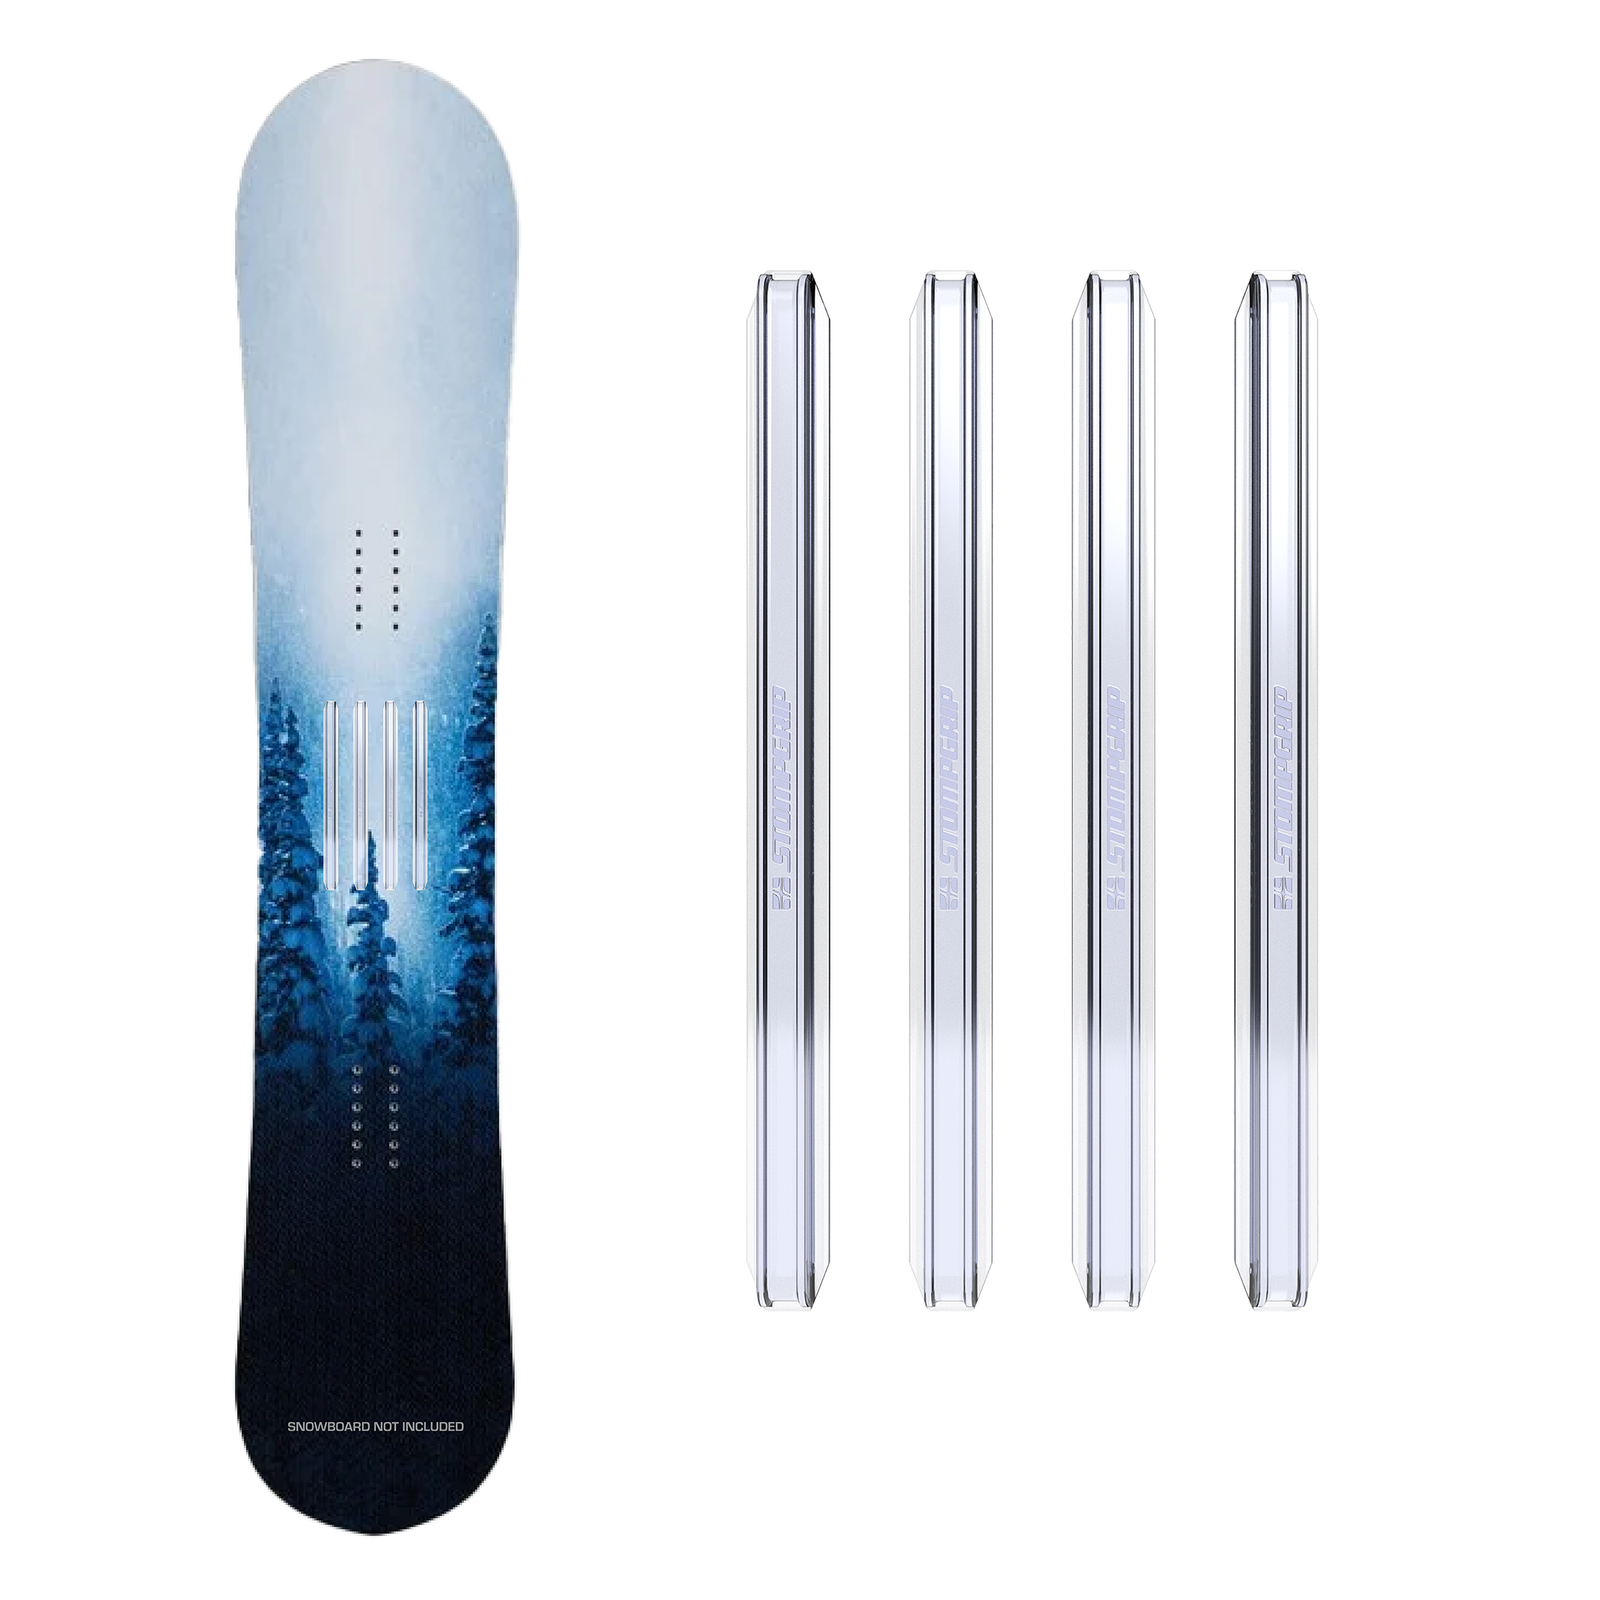 BOXOB Stomp Pad Snowboard, Transparente Antideslizante Snowboard Pad  Snowboard Grip Pad para Snowboard : : Deportes y aire libre